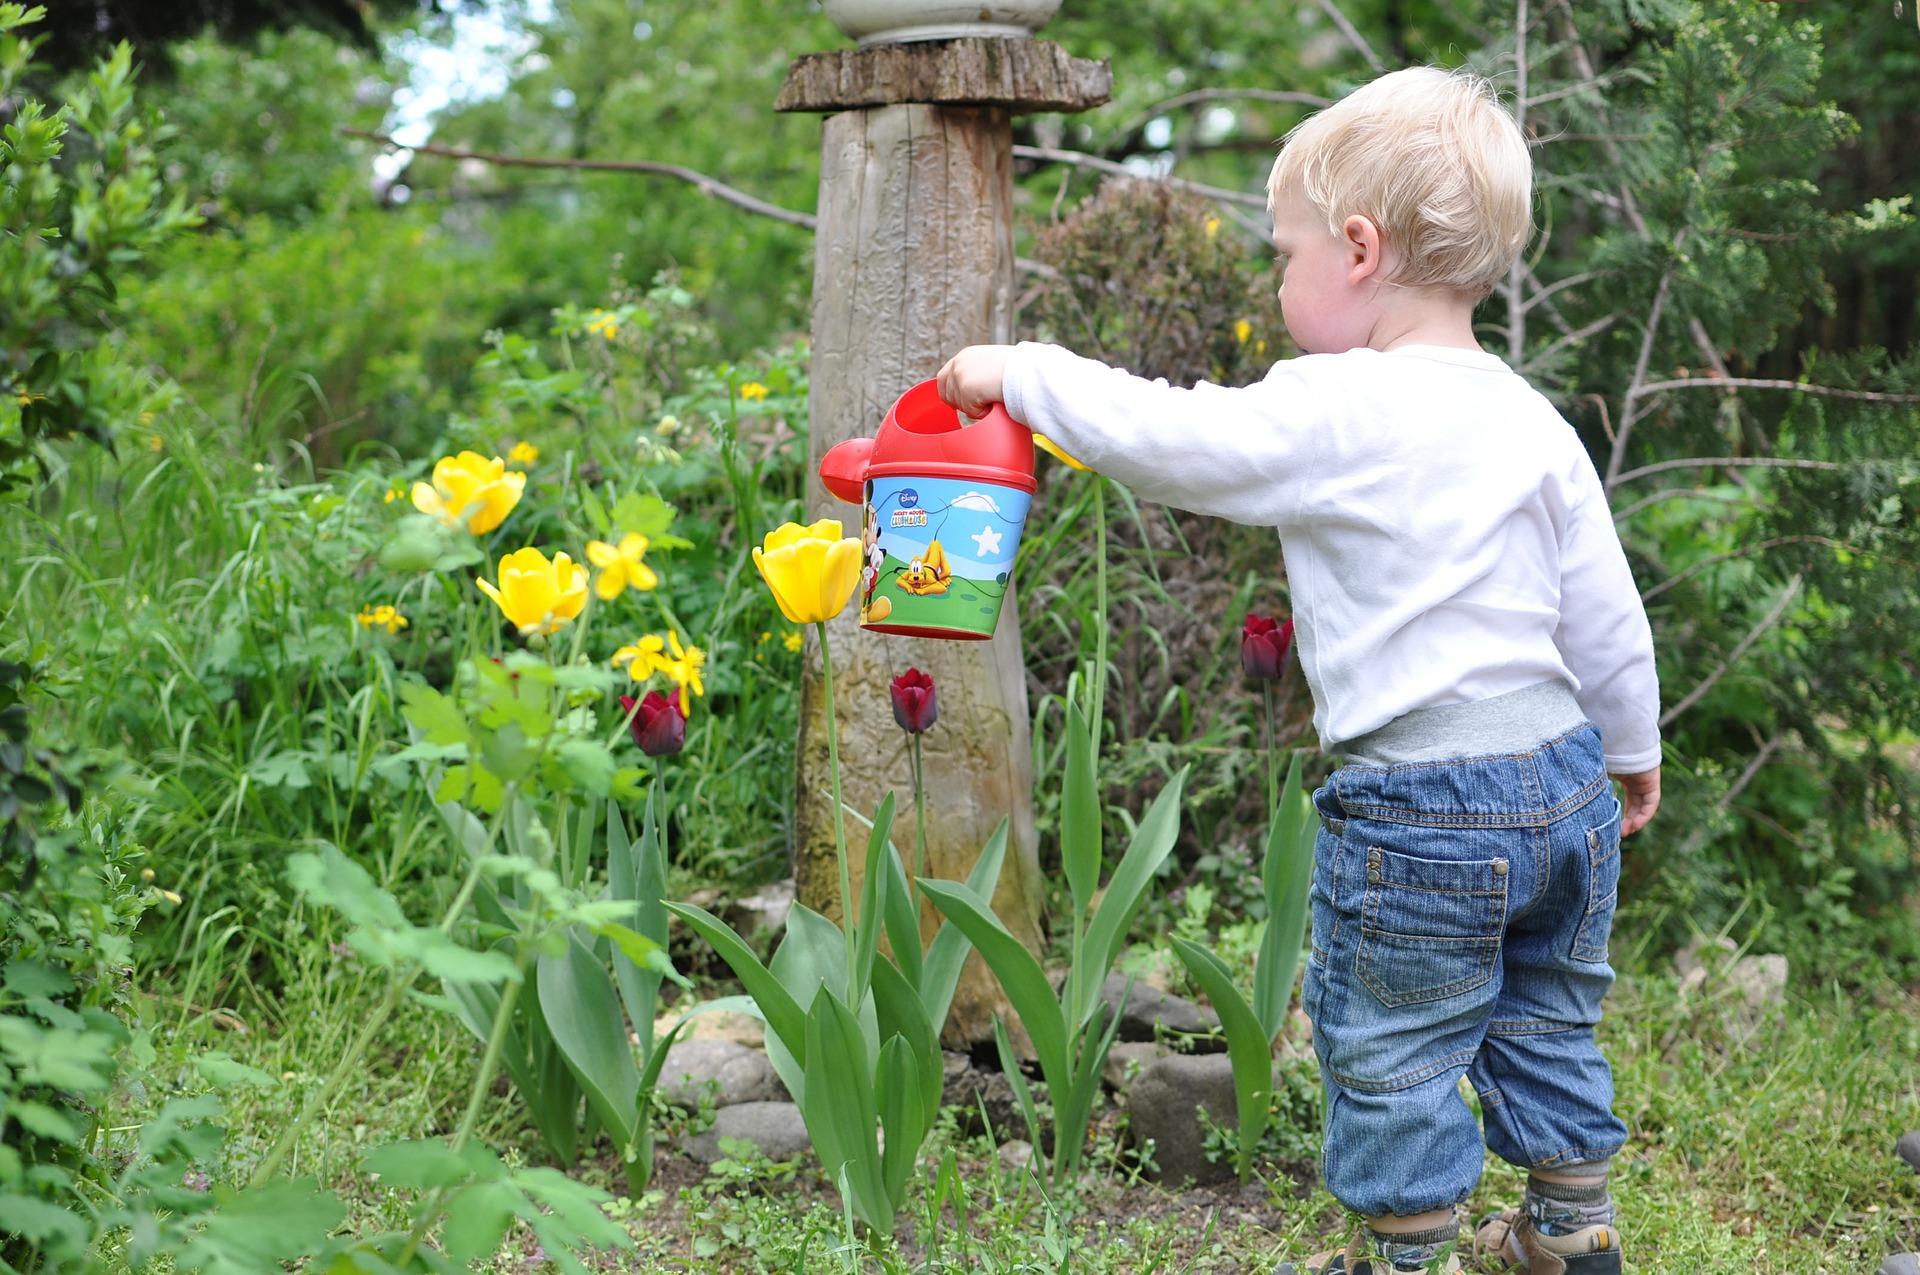 Comment protéger les enfants des outils de jardin ?